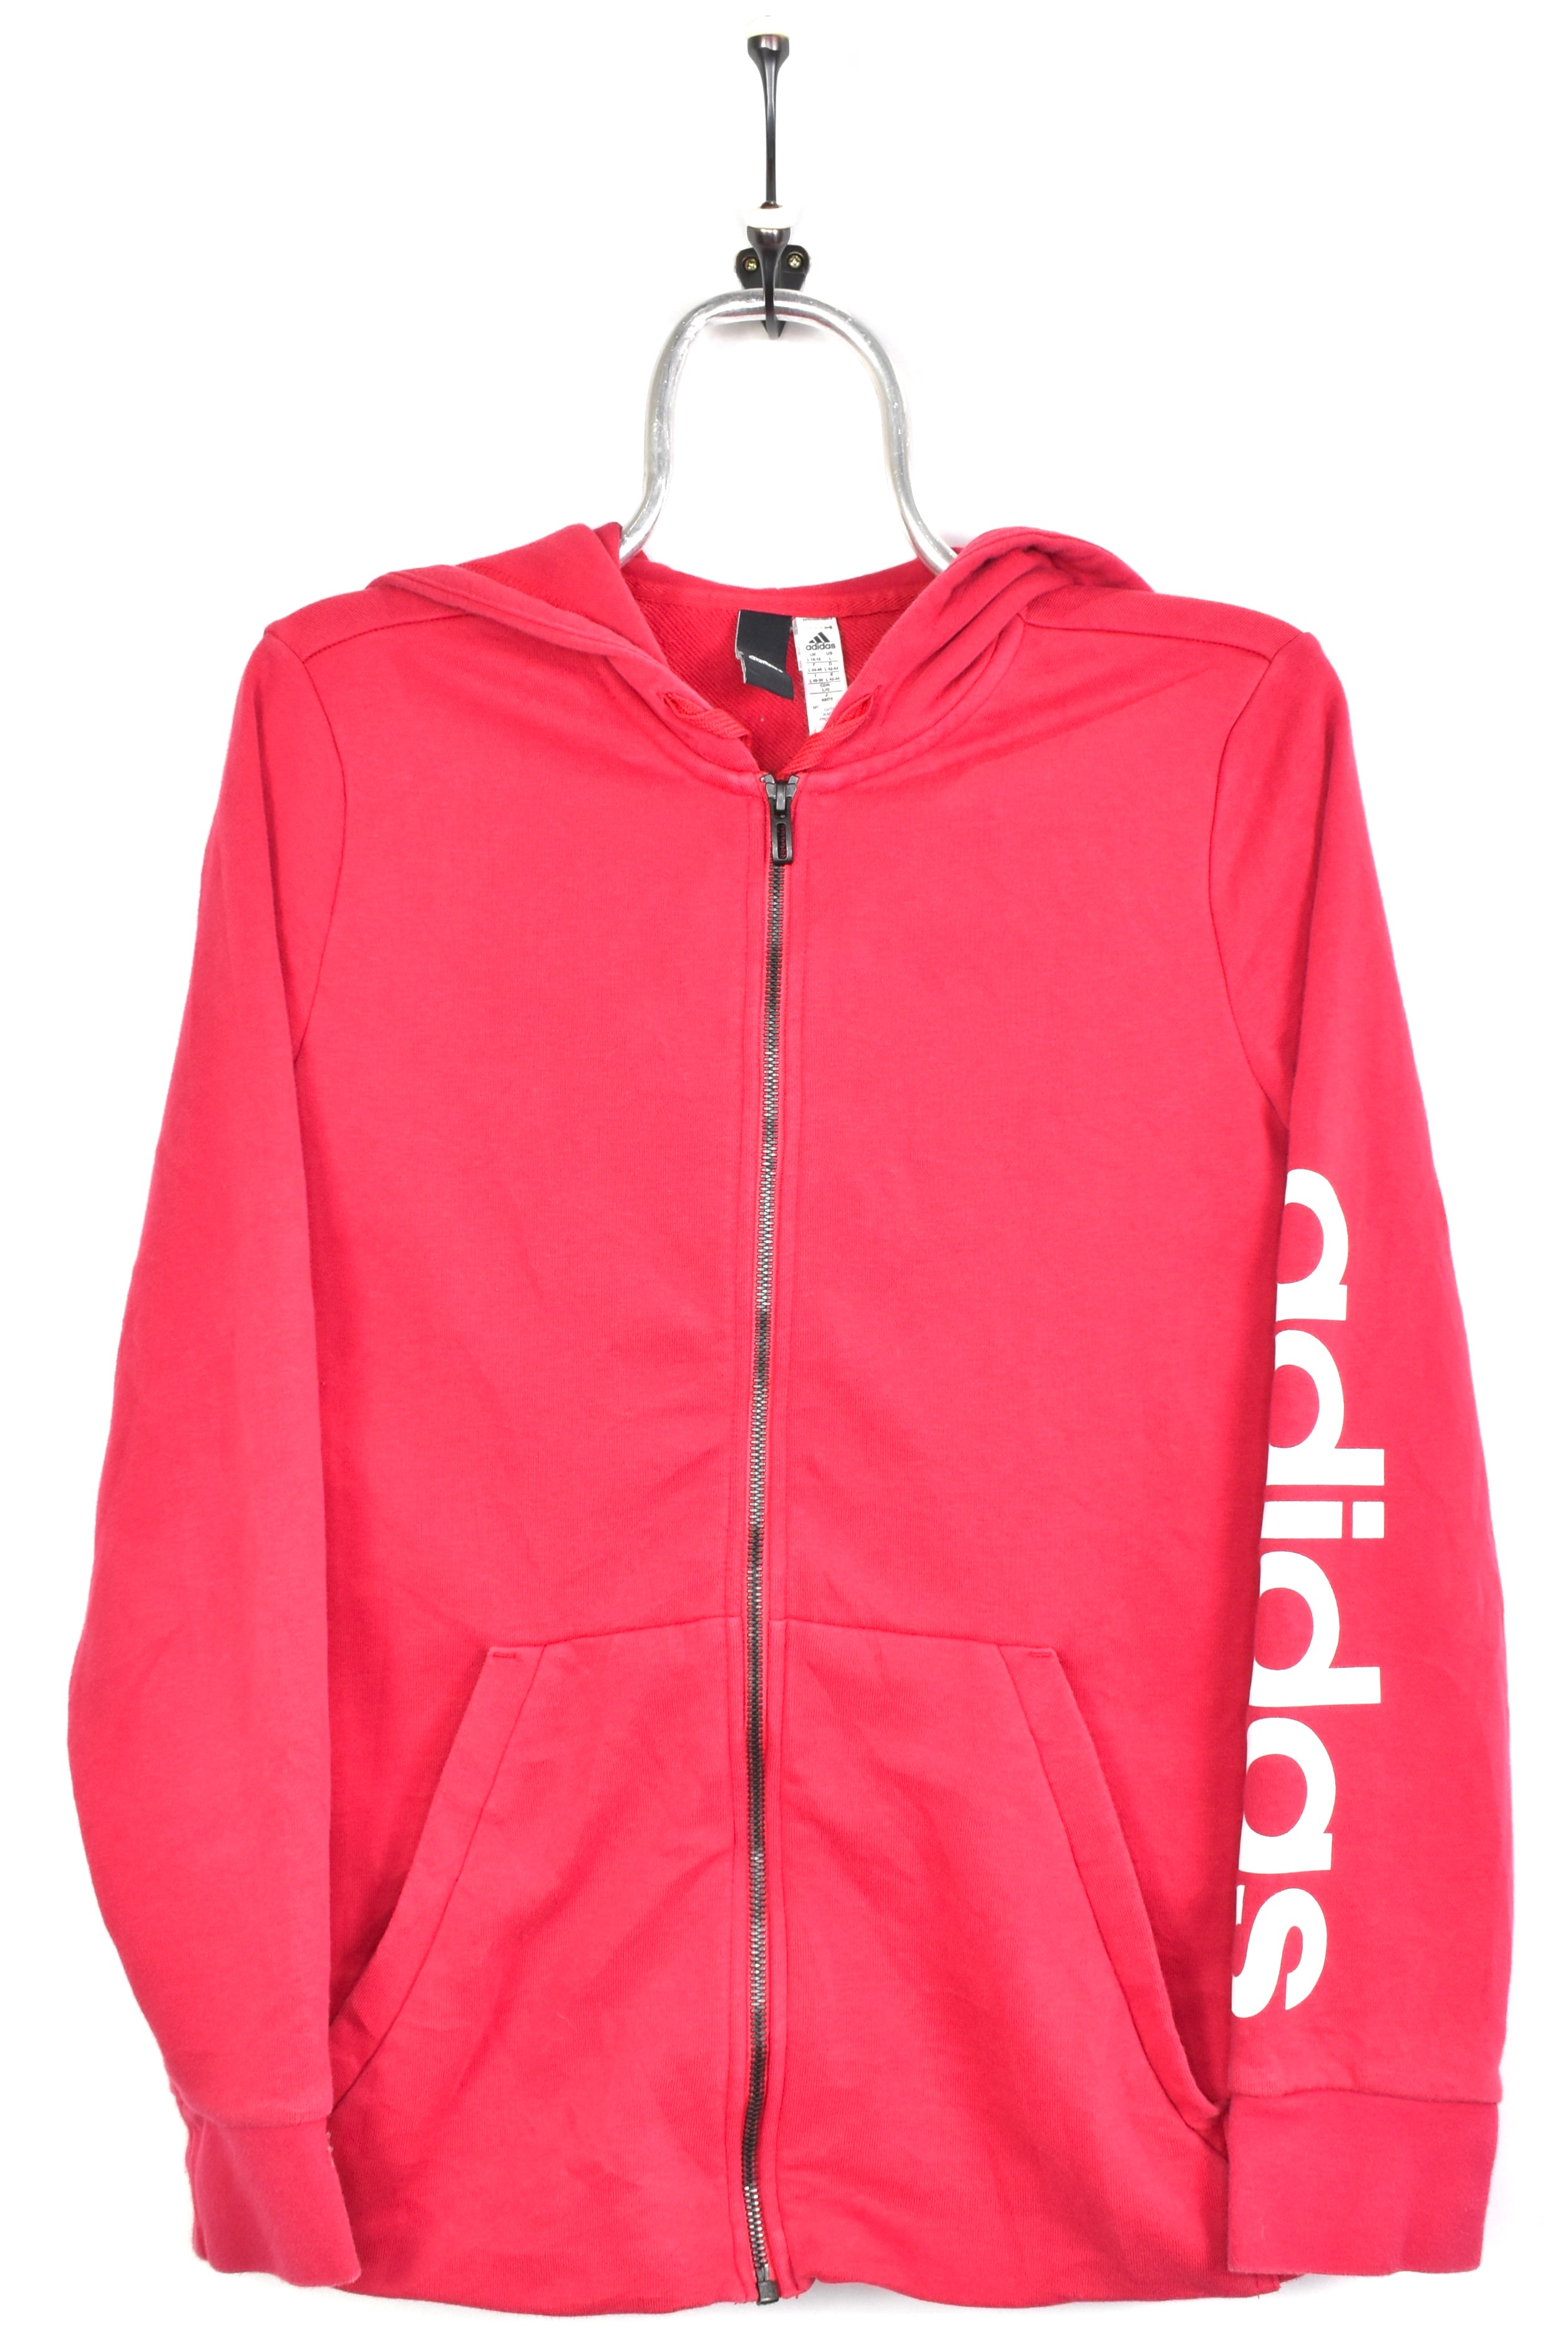 Women's modern Adidas hoodie, full zip hooded sweatshirt - medium, pink ADIDAS